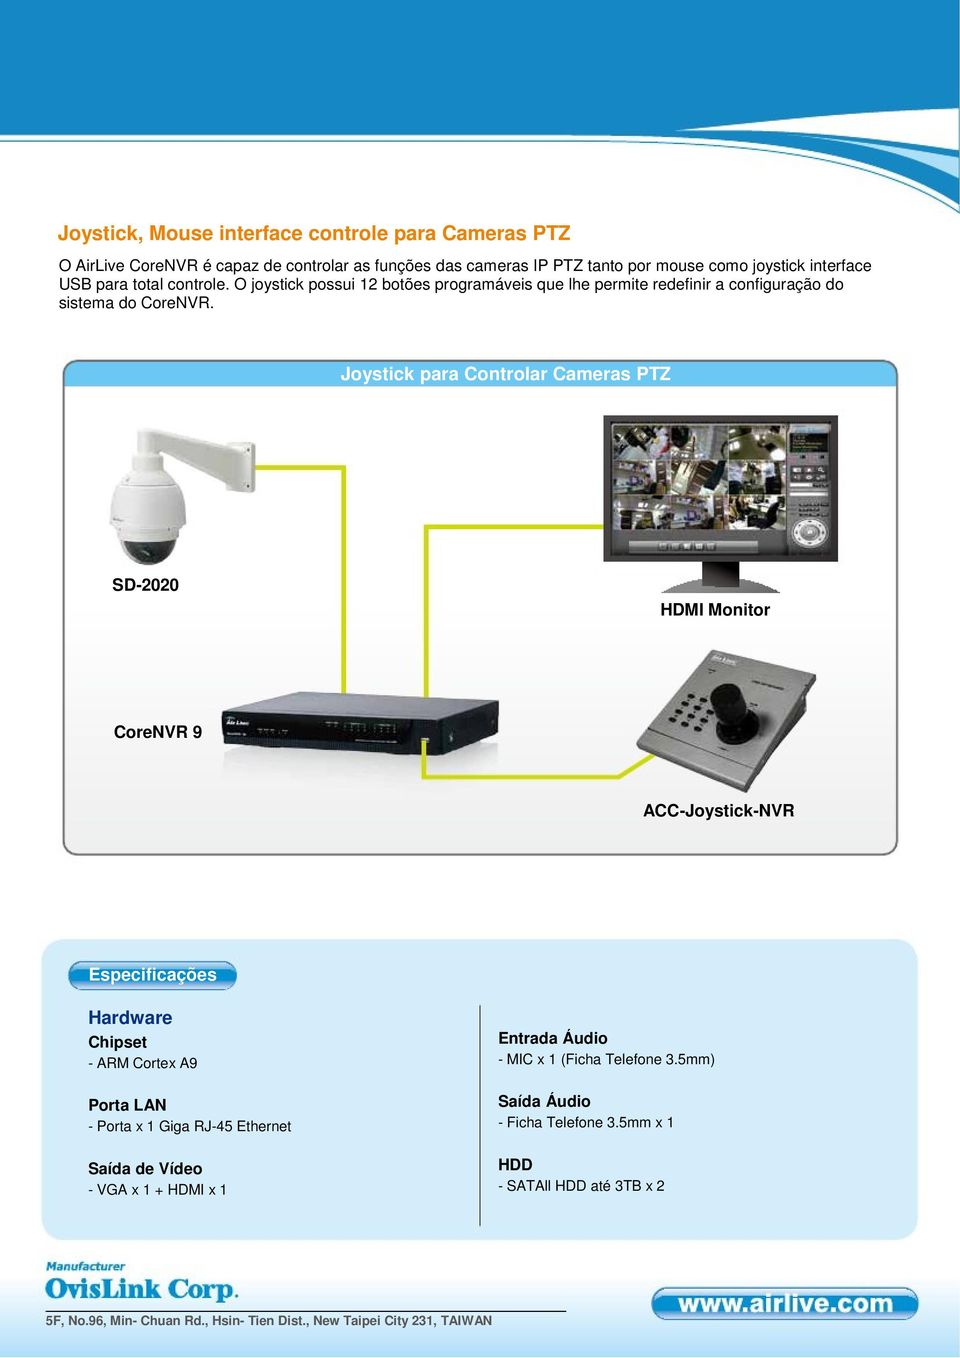 Joystick para Controlar Cameras PTZ SD-2020 HDMI Monitor CoreNVR 9 ACC-Joystick-NVR Especificações Hardware Chipset - ARM Cortex A9 Entrada Áudio - MIC x